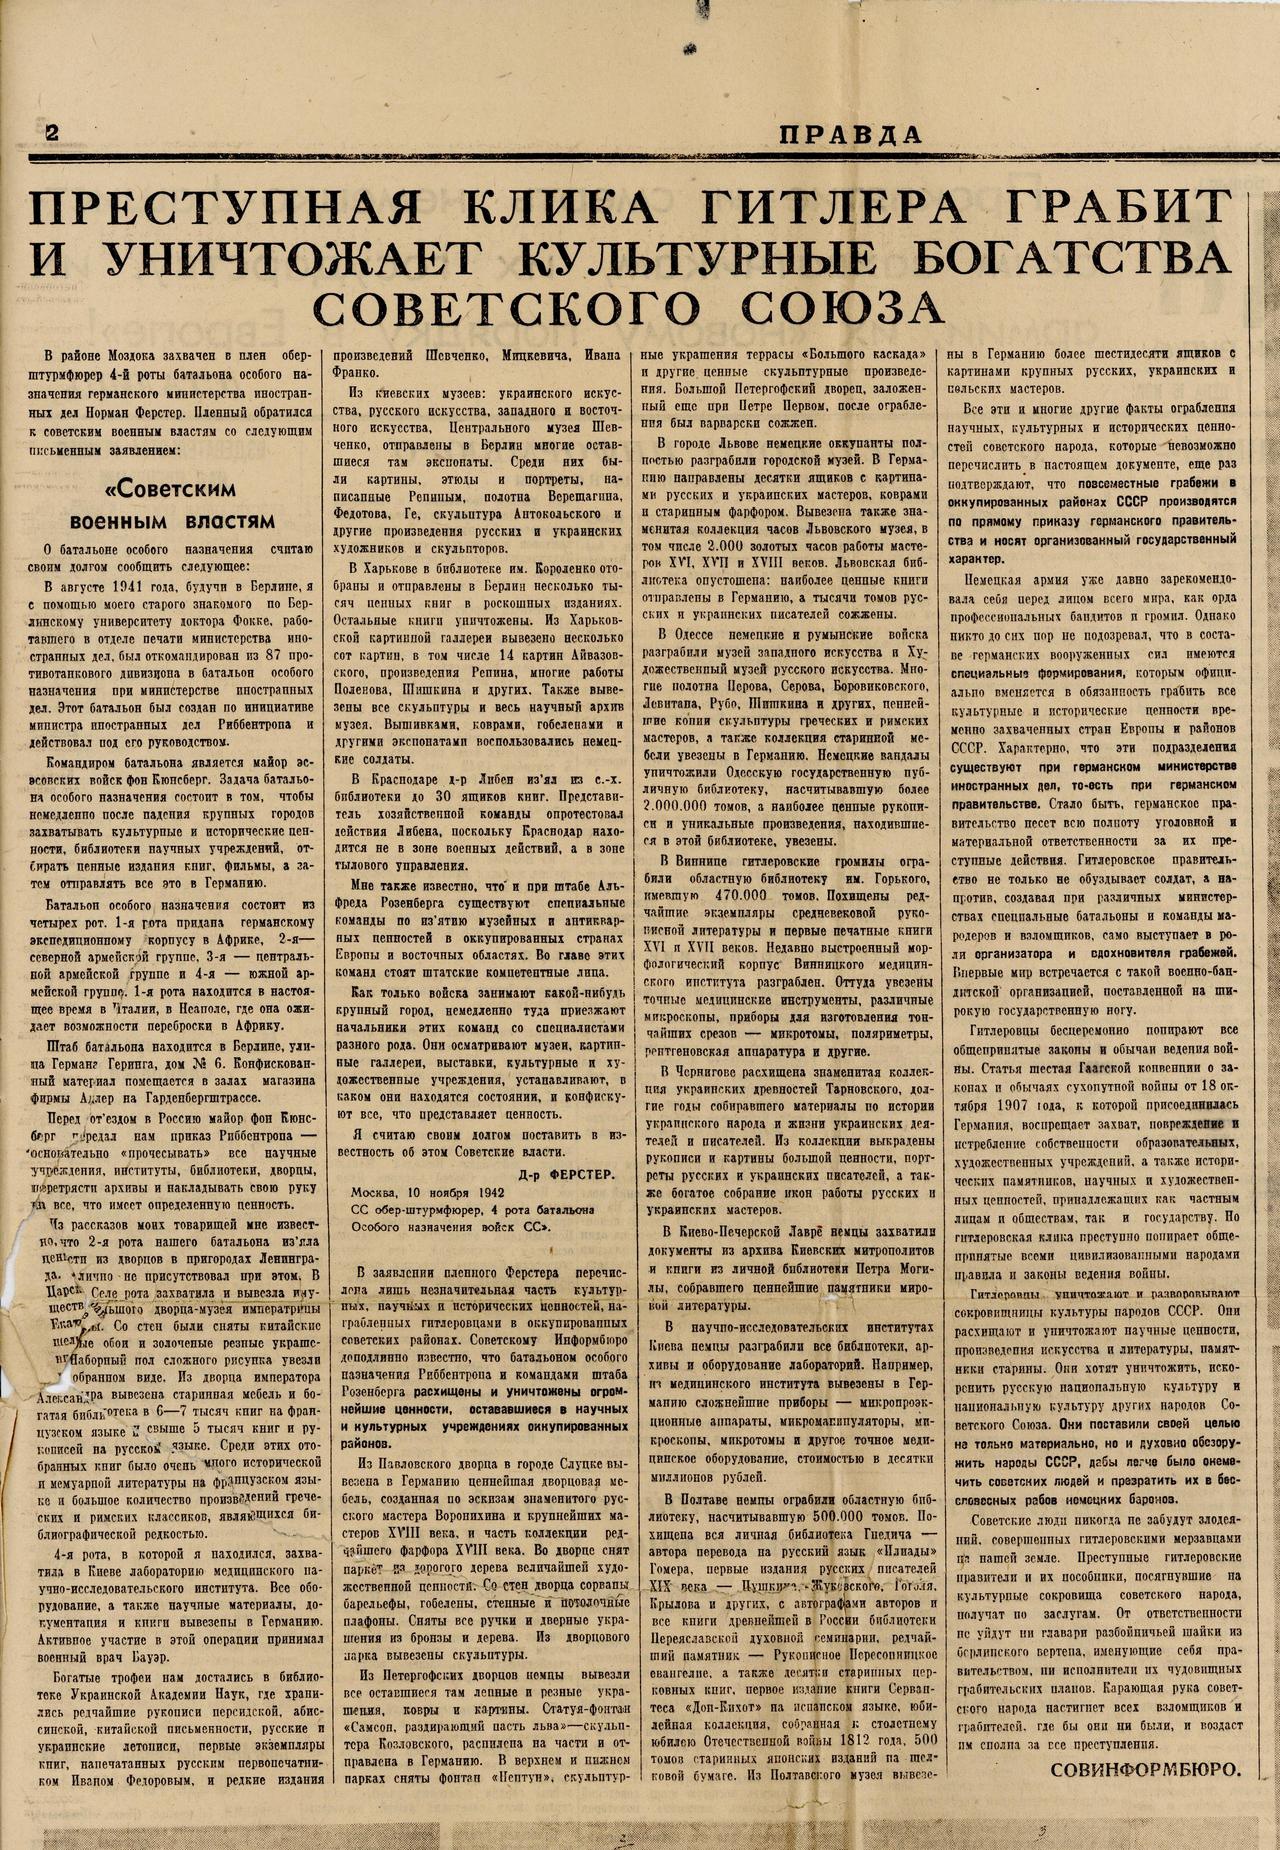 17 ноября 1942 года в газете «Правда» было опубликовано заявление доктора Ферстера с комментарием Совинформбюро.